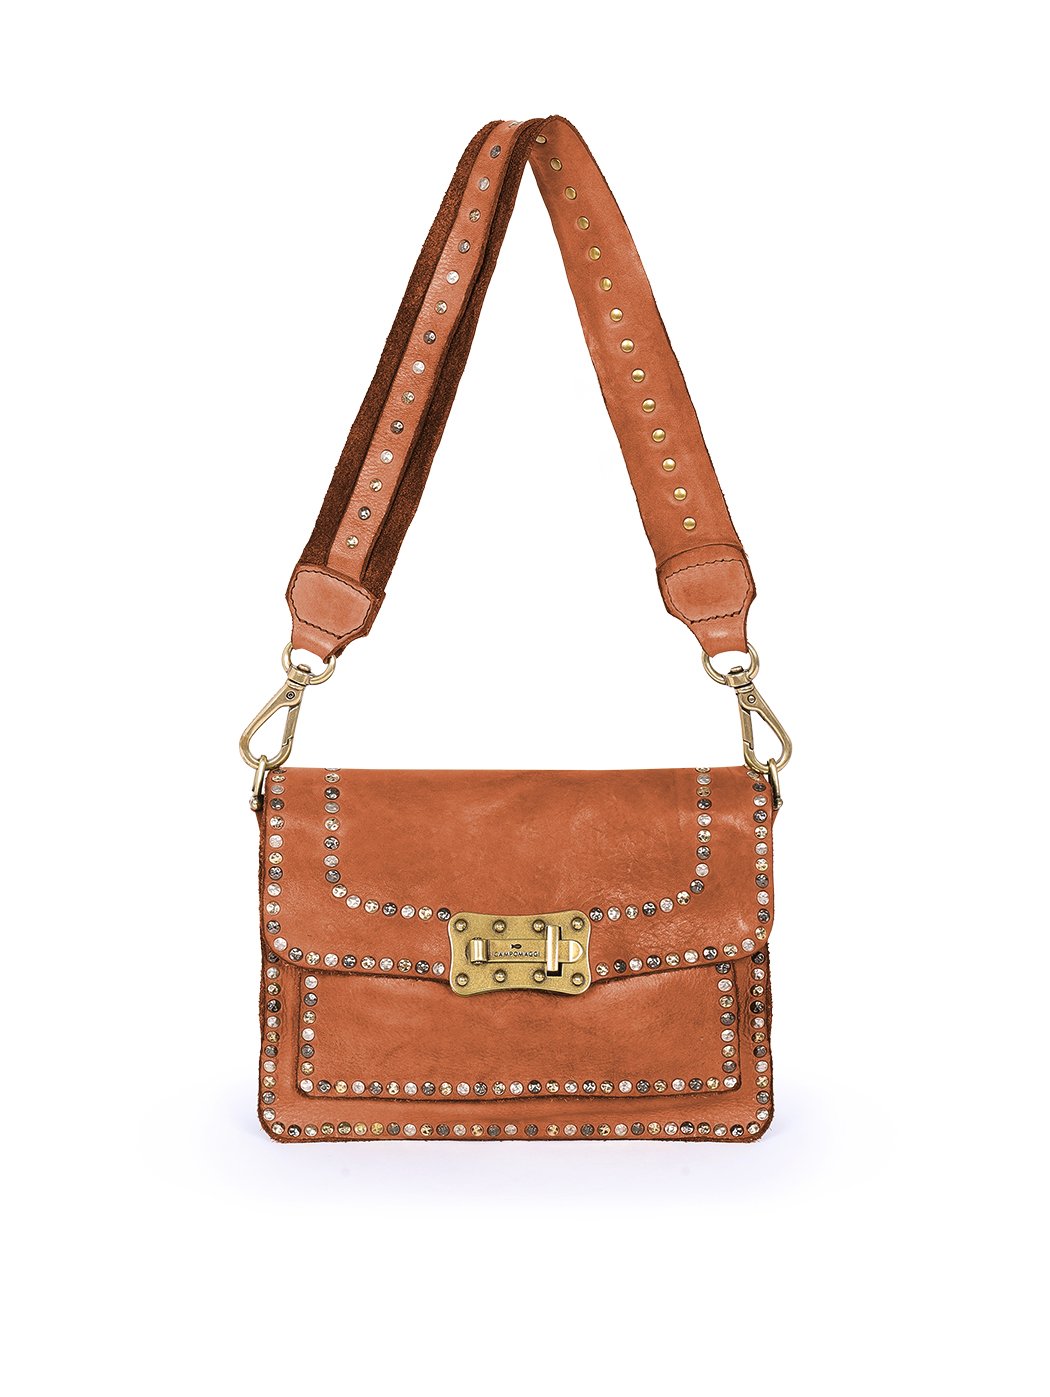 Мини - сумочка со съемным плечевым ремнем  коричневого цвета